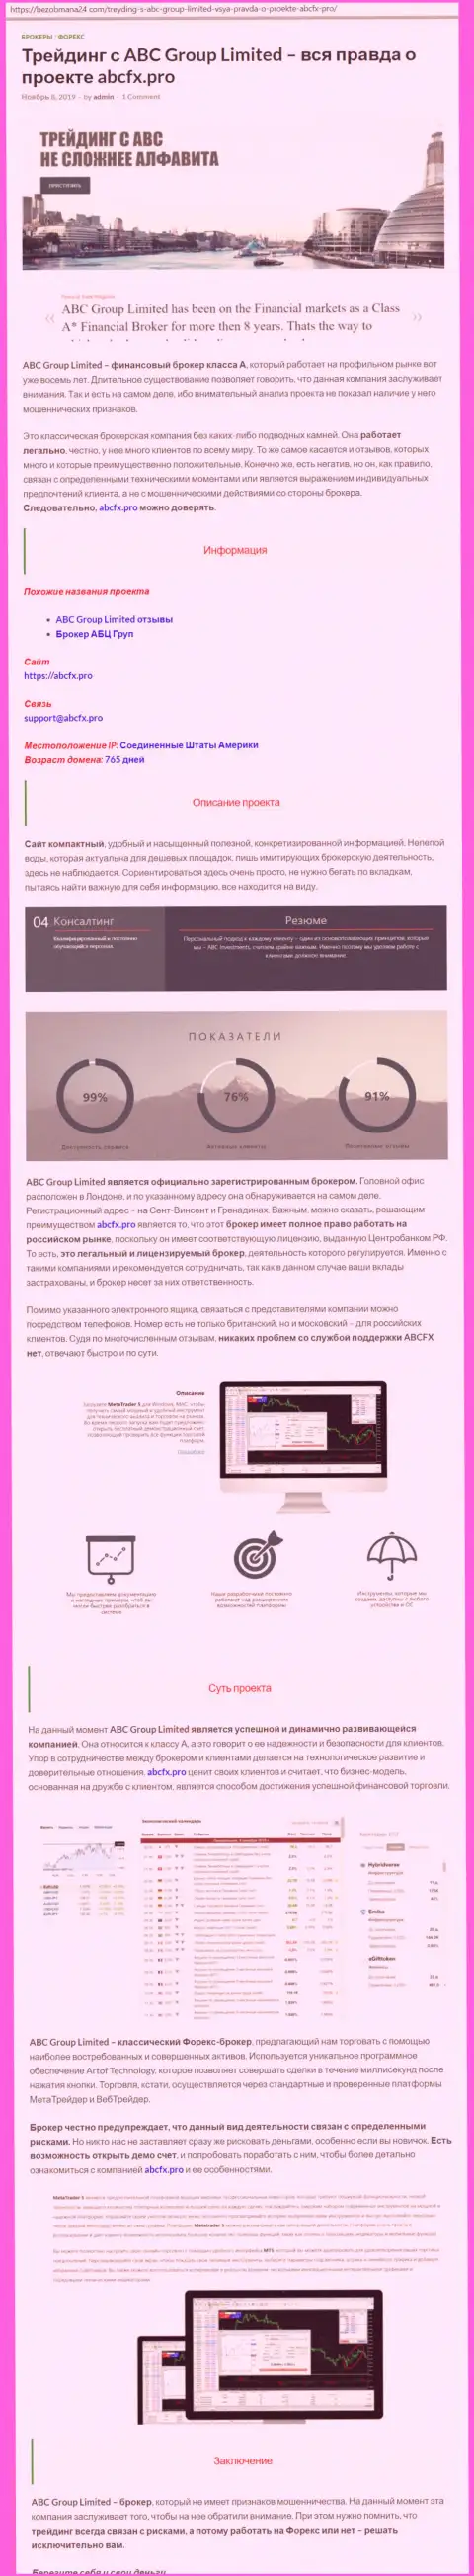 Обзор деятельности форекс брокера AbcFx Pro от web-портала безобмана24 ком